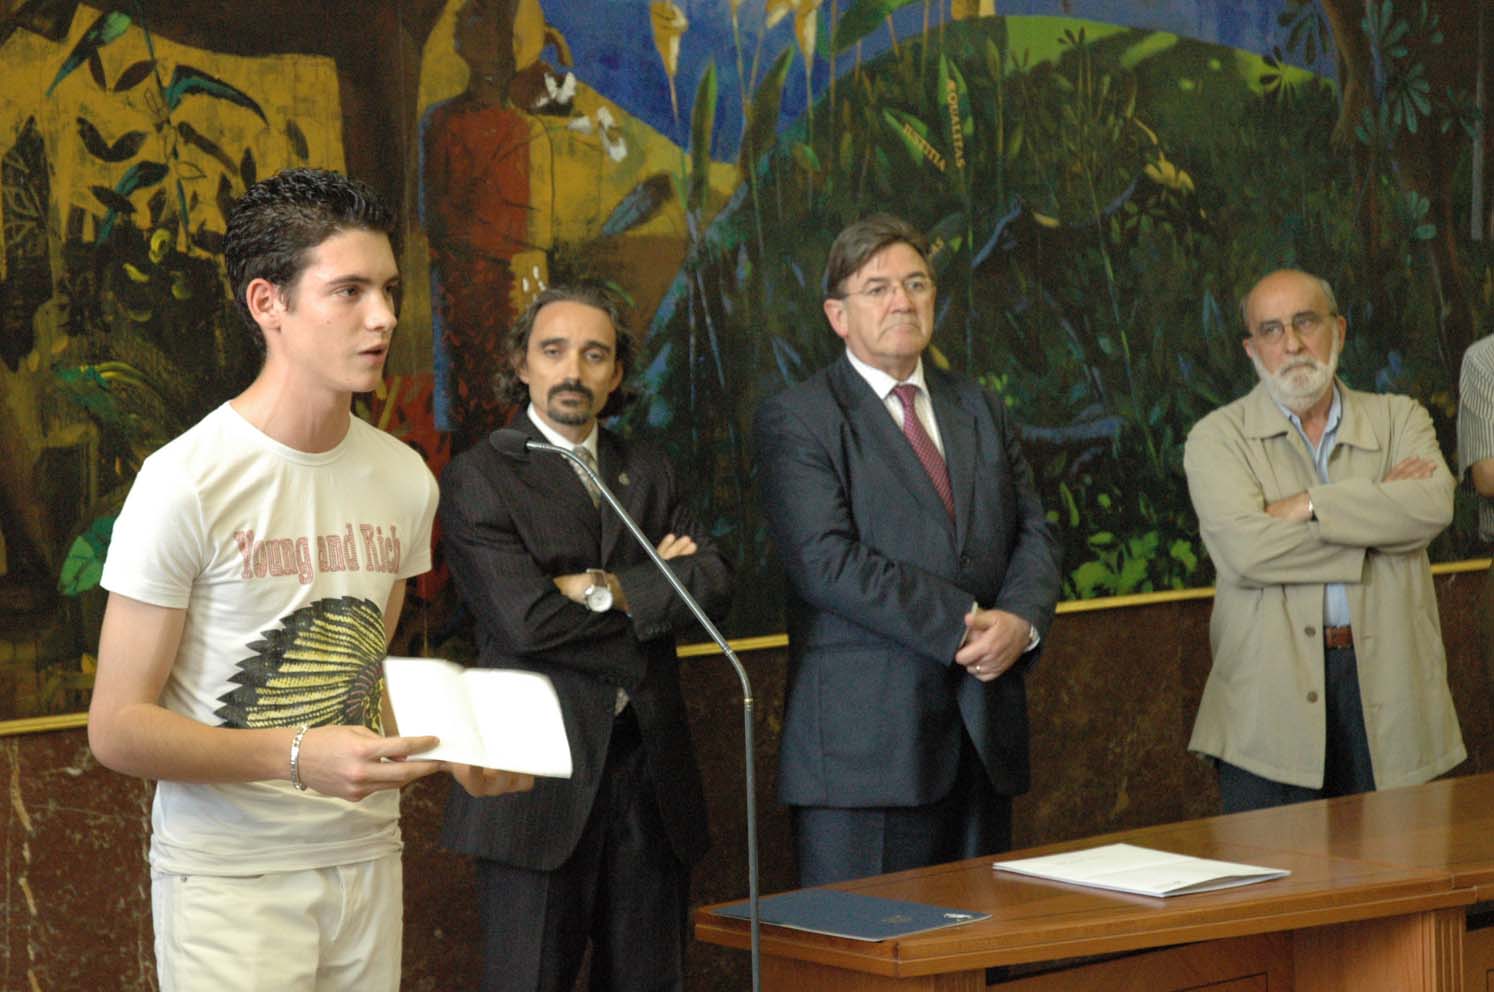 Entrega de diplomas en la Delegación del Gobierno en Aragón. a los jóvenes participantes en el proyecto de prevención de la violencia en el fútbol.
<br/>